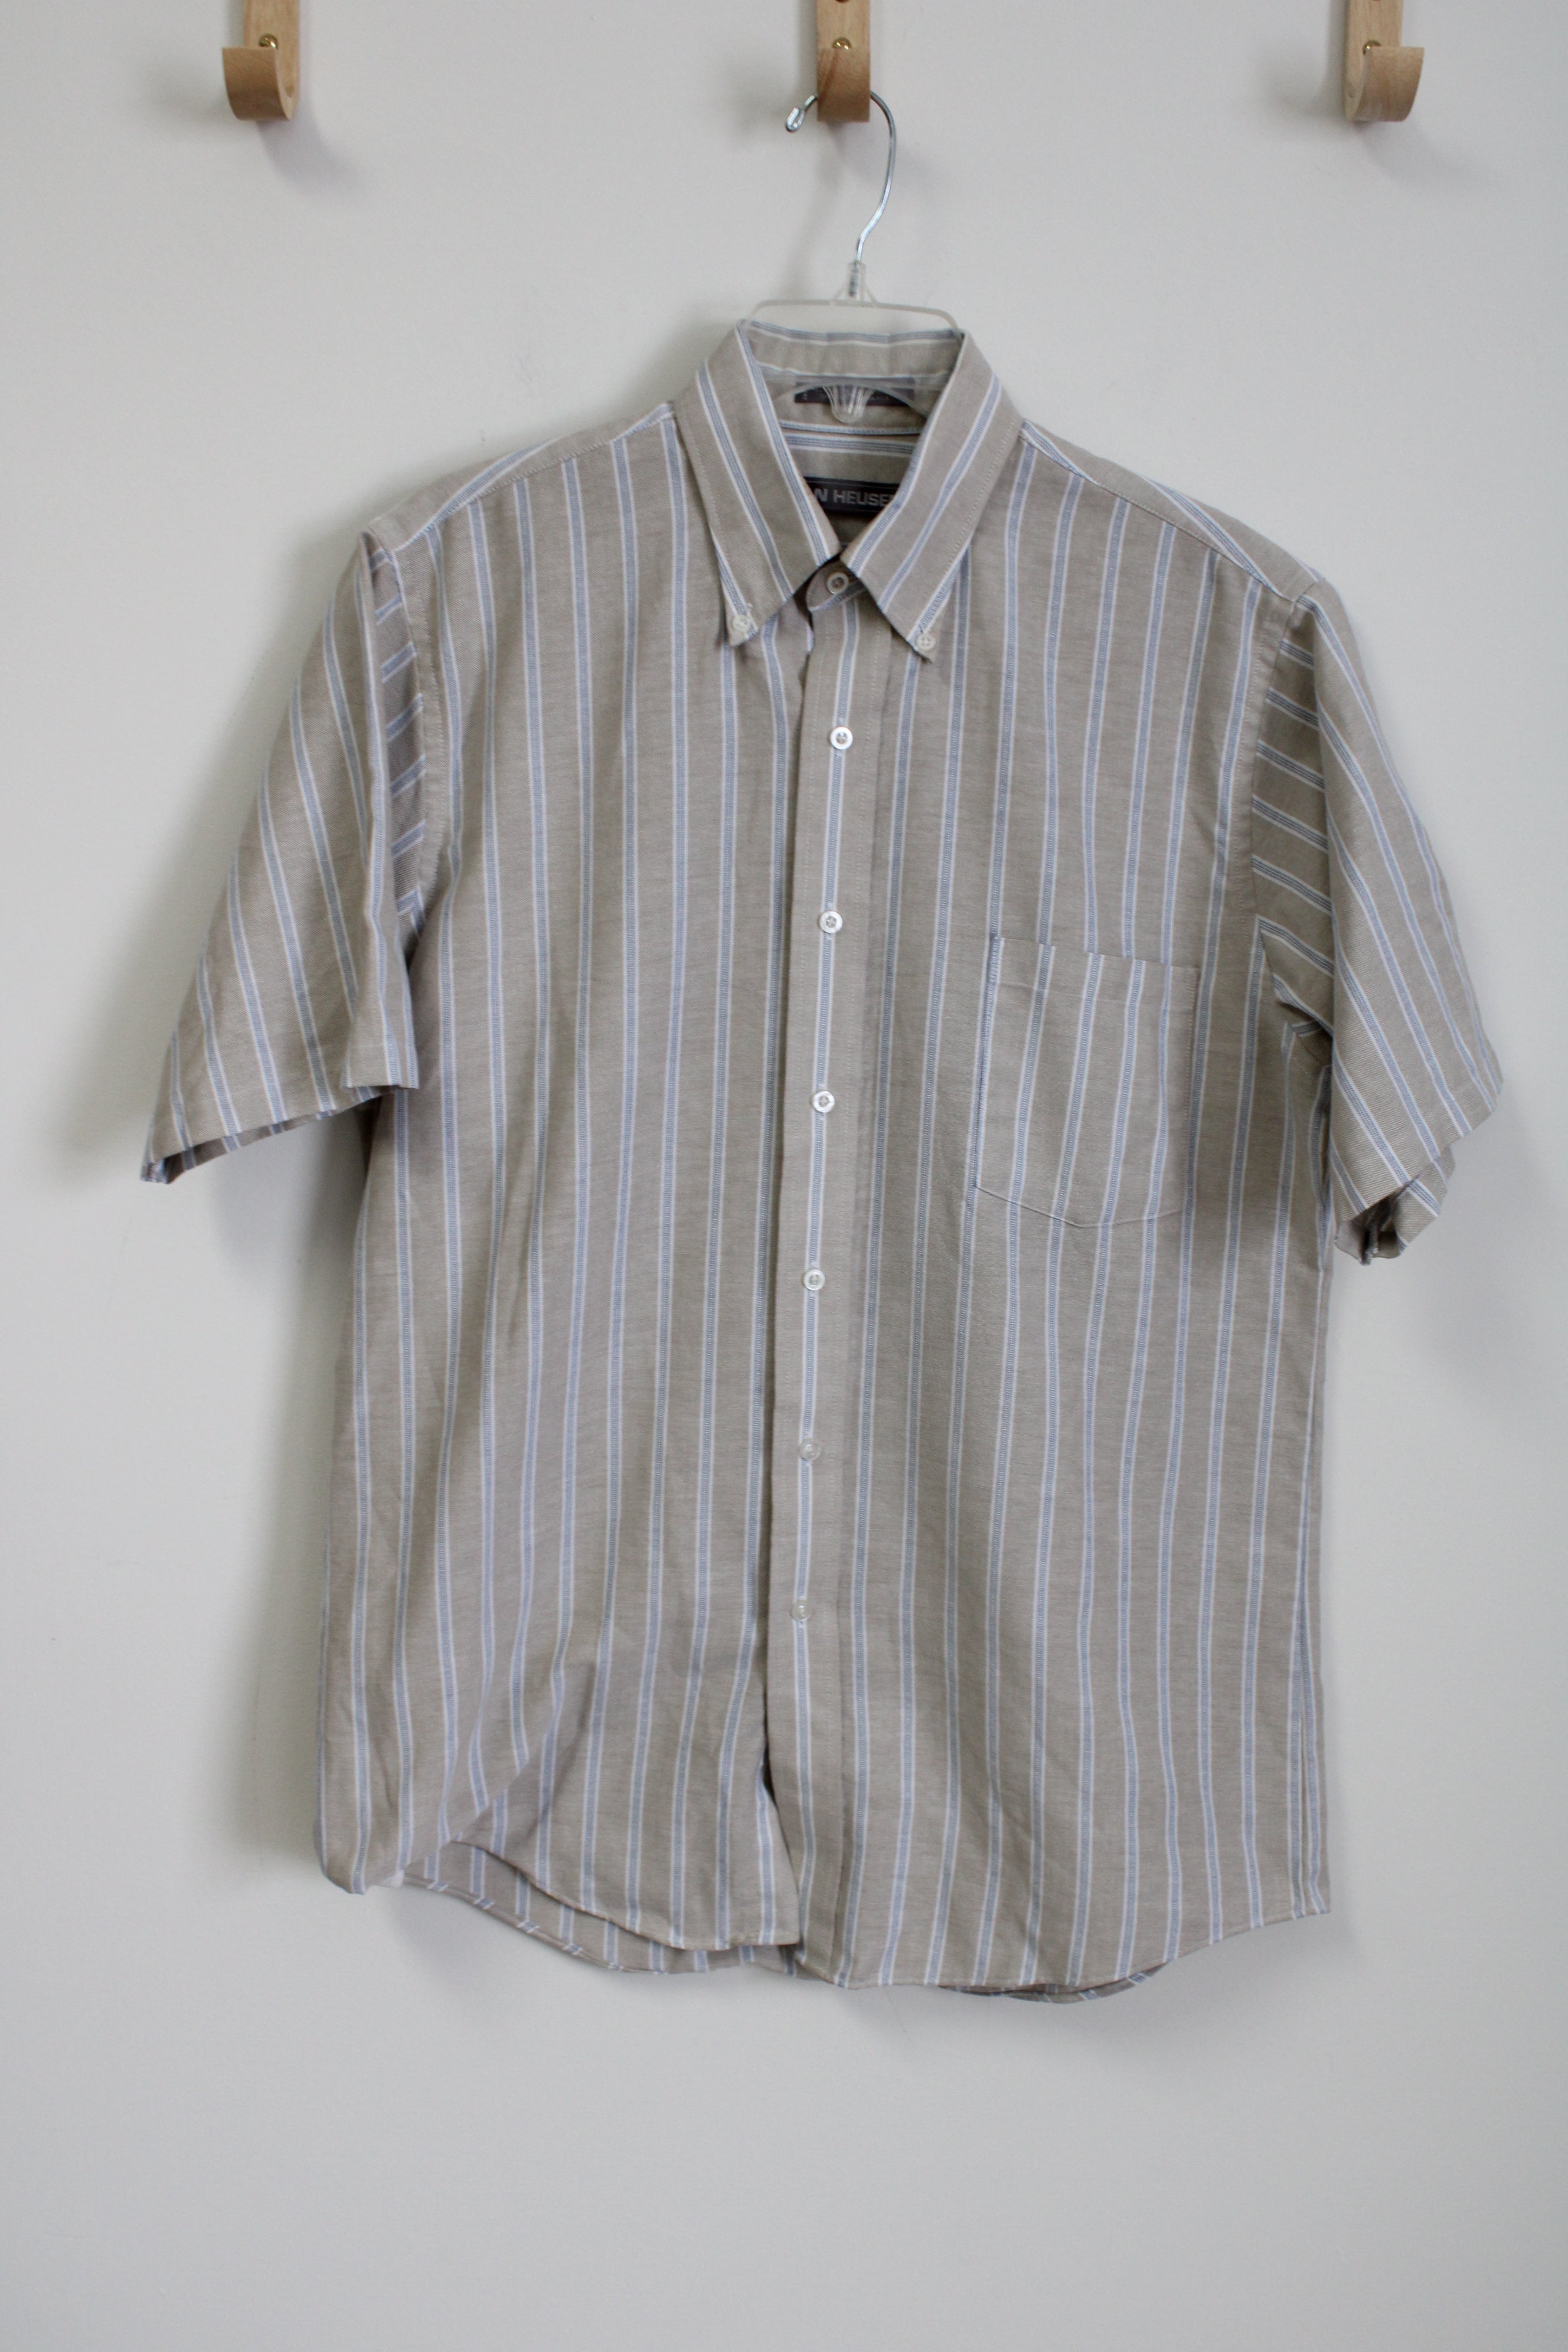 Van Heusen Tan Blue Striped Short Sleeved Button Down Shirt | 15 1/2